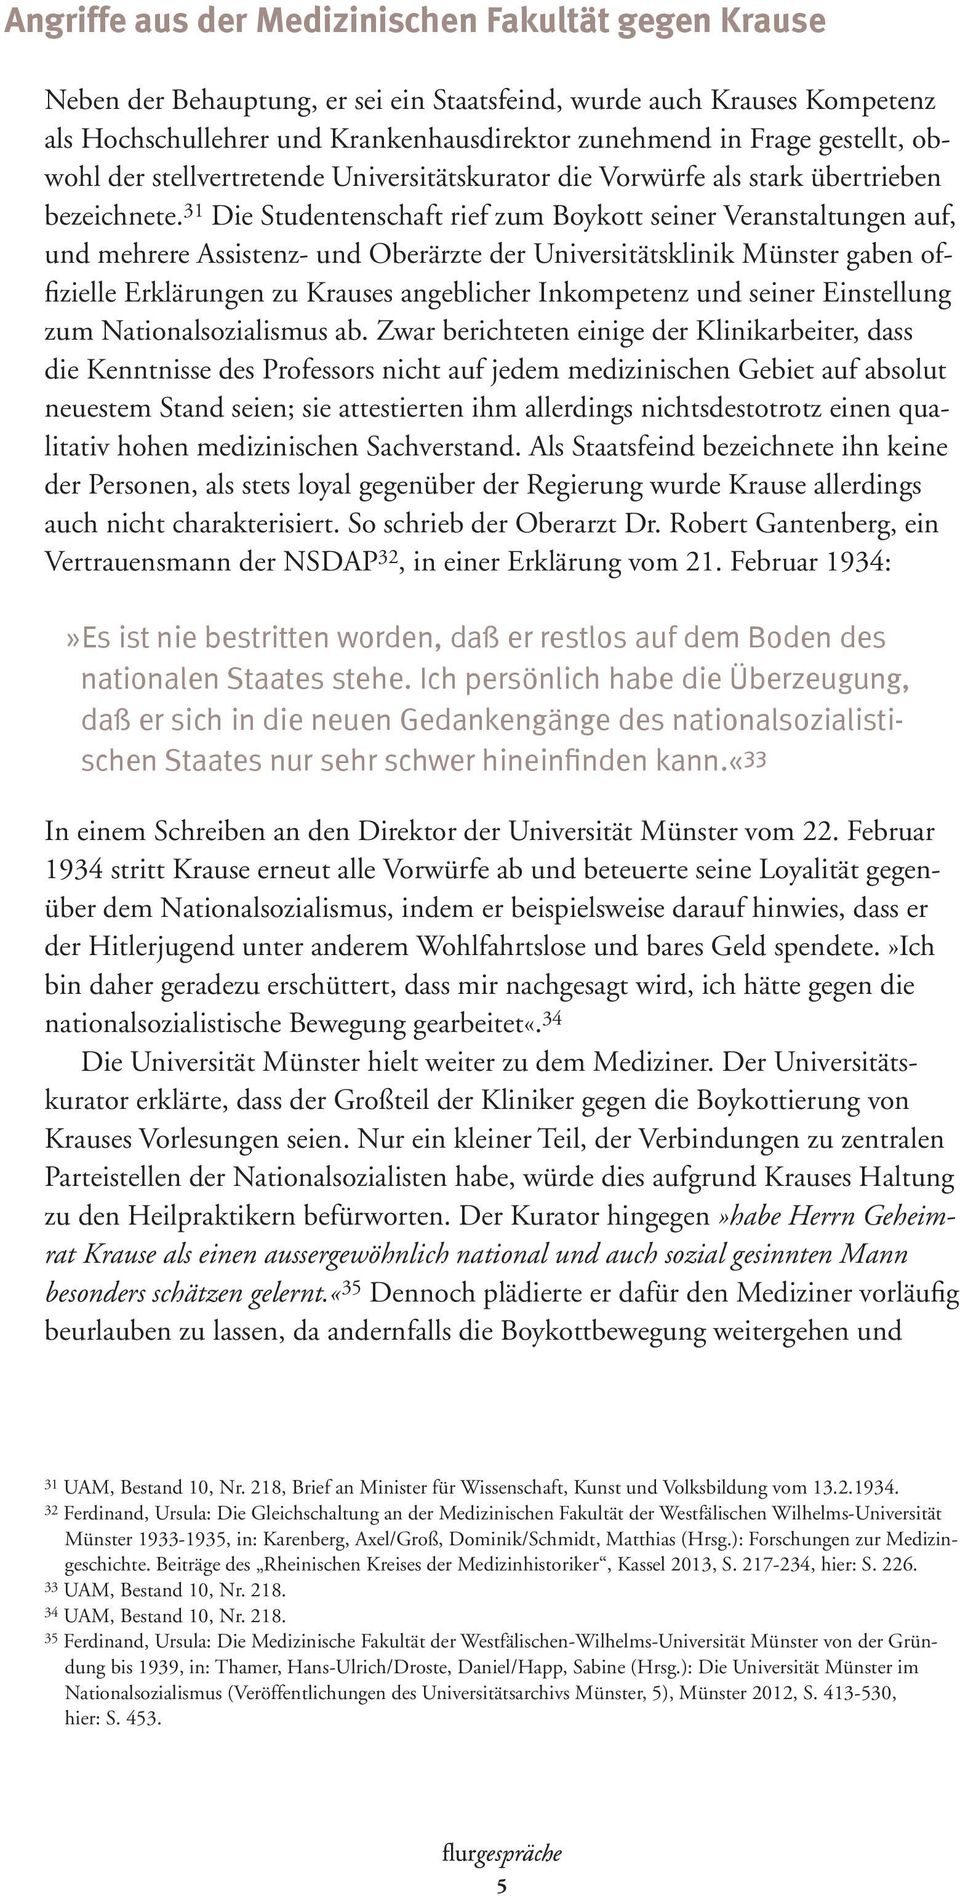 31 Die Studentenschaft rief zum Boykott seiner Veranstaltungen auf, und mehrere Assistenz- und Oberärzte der Universitätsklinik Münster gaben offizielle Erklärungen zu Krauses angeblicher Inkompetenz